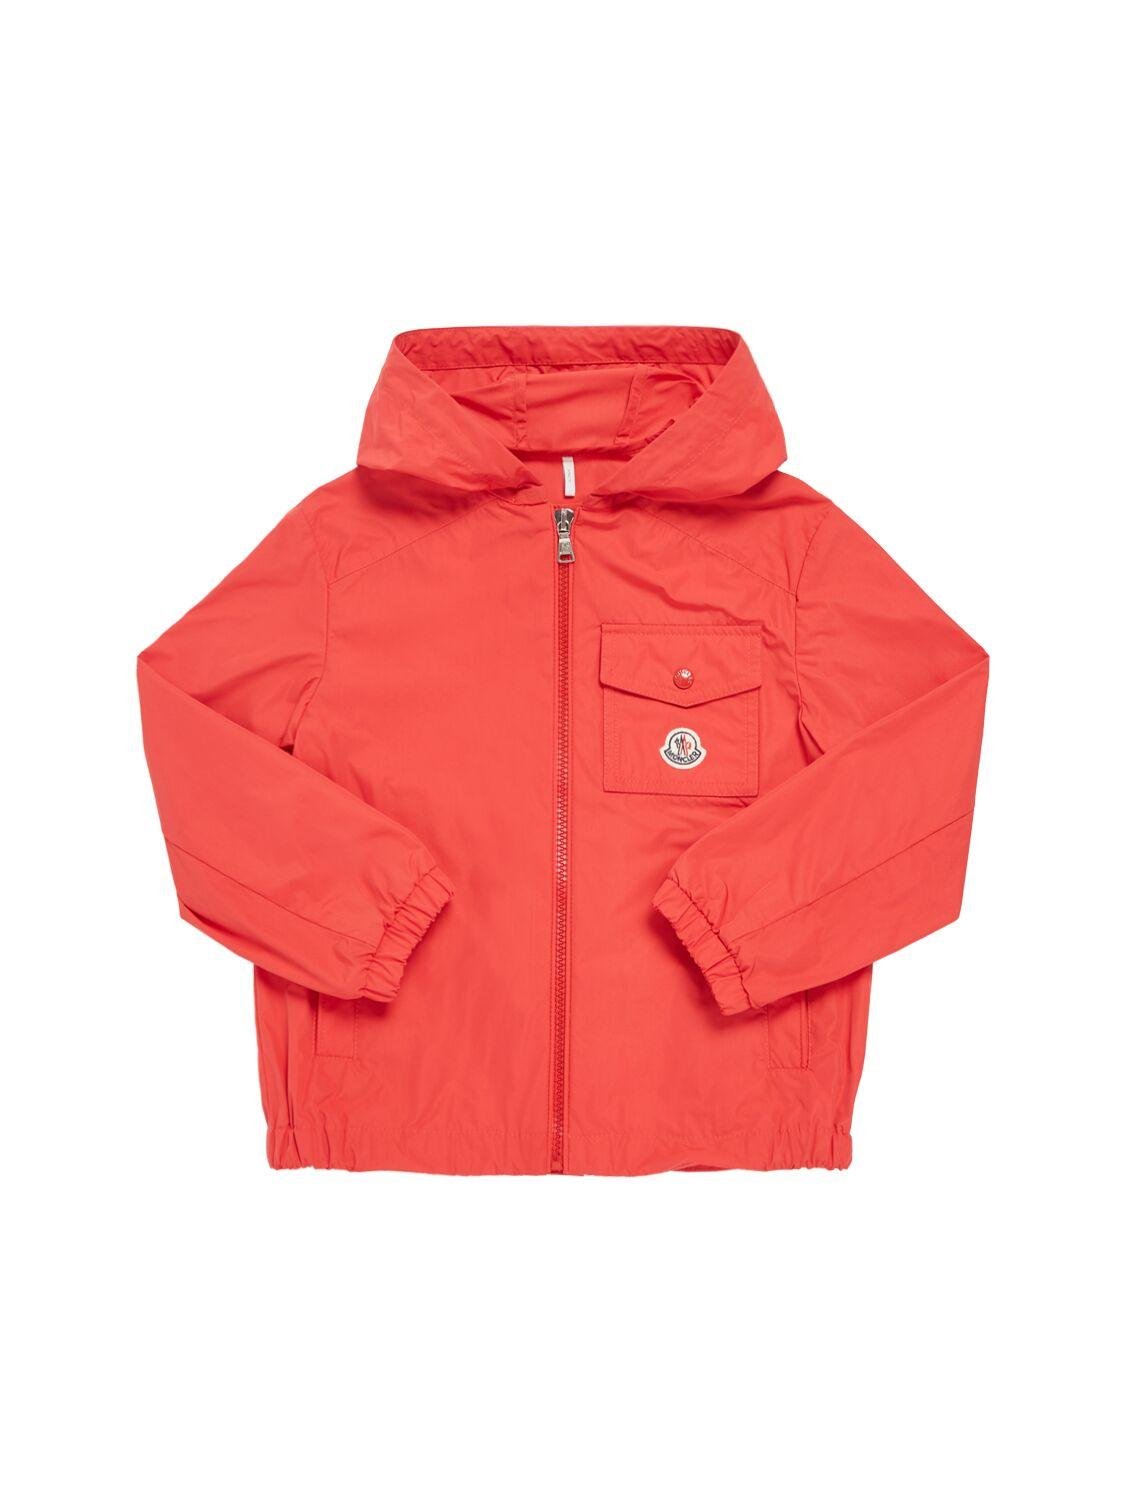 Ebo Tech Rainwear Jacket by MONCLER